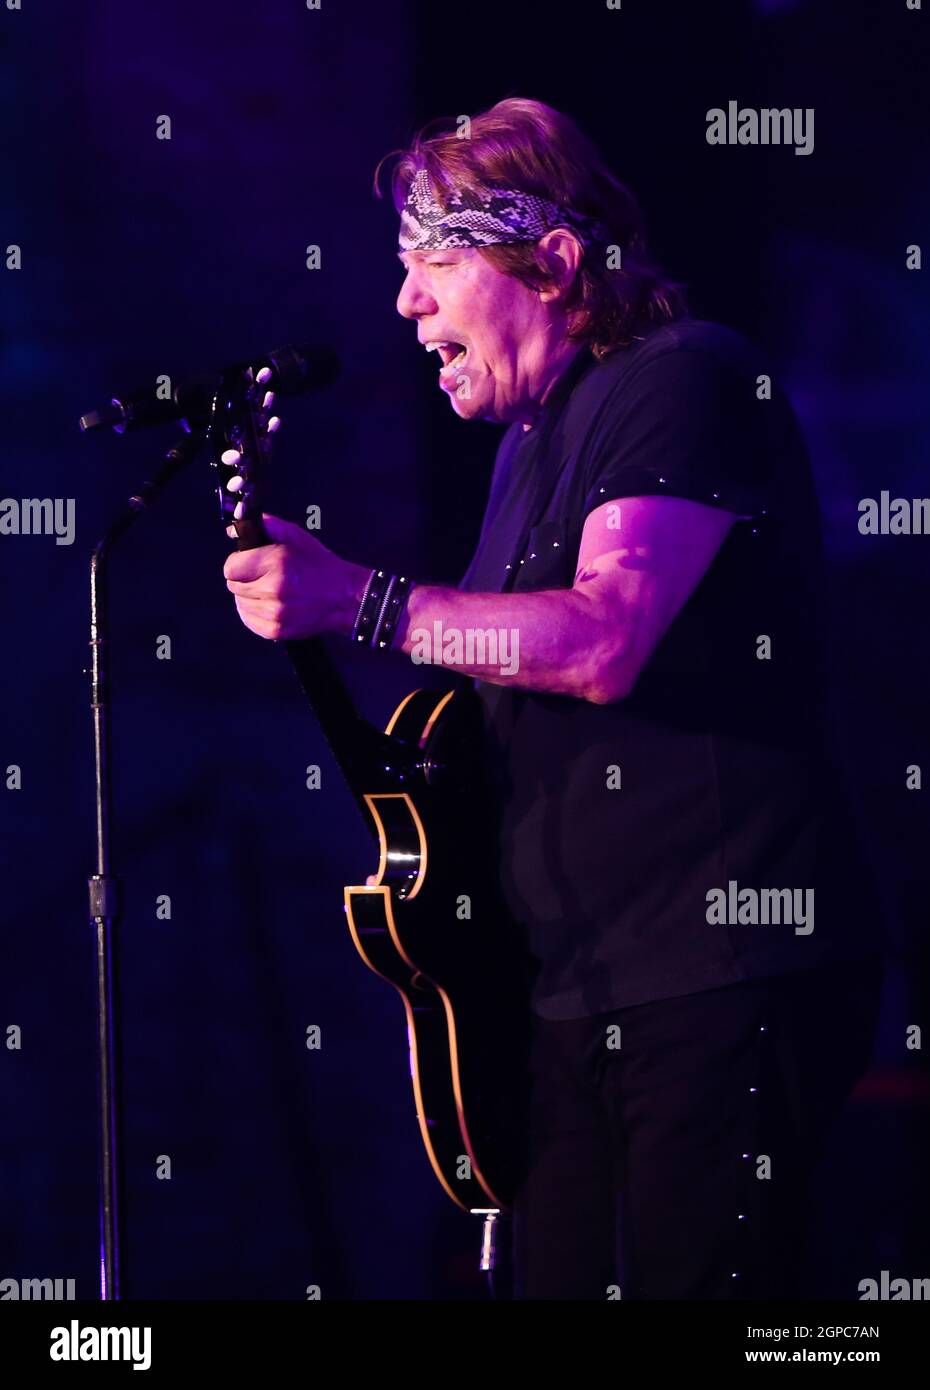 HUNTINGTON, NY - 23 SETTEMBRE: Il cantante George Thorogood suona sul palco al Paramount il 23 settembre 2021 a Huntington, New York. Foto Stock